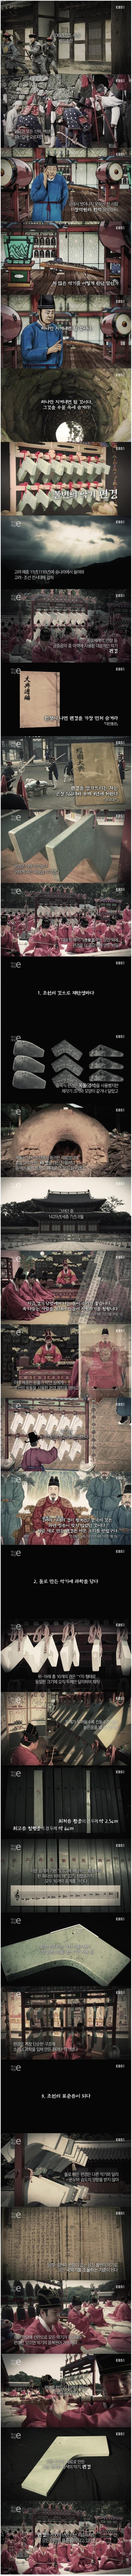 조선 음악에 가장 중요한 국보급 악기 - 꾸르